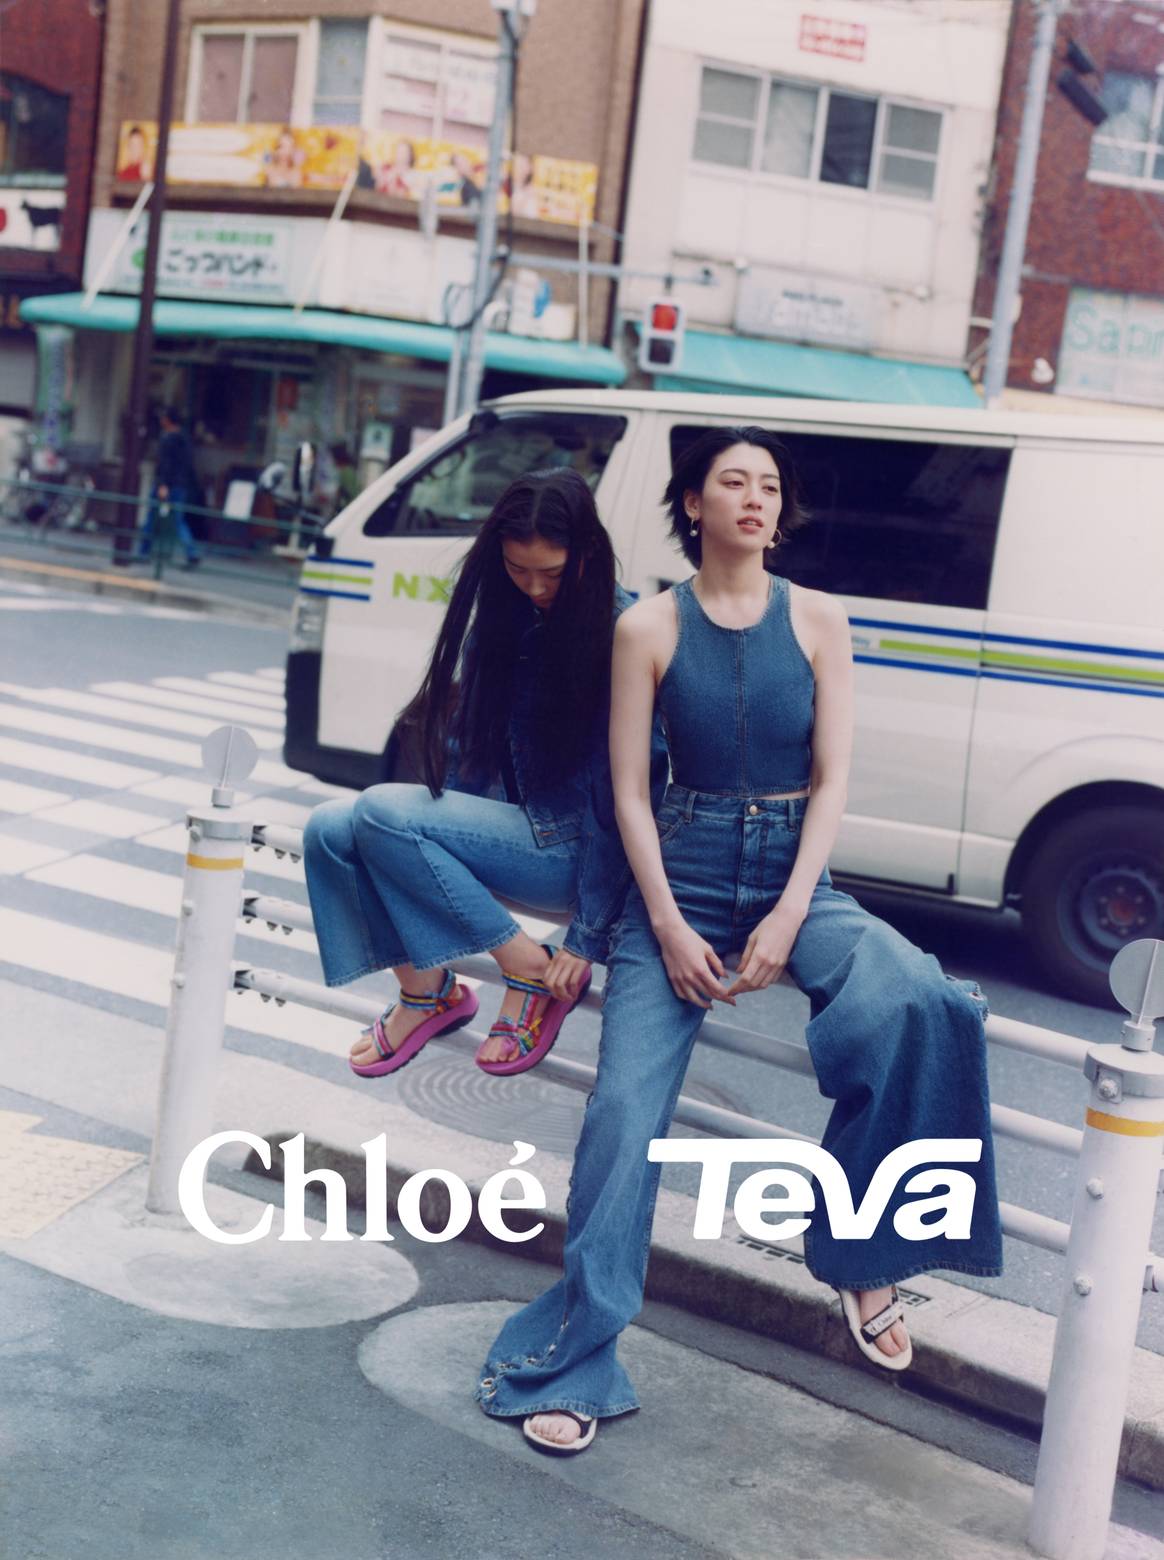 Image: Chloé; Chloé × Teva footwear collaboration